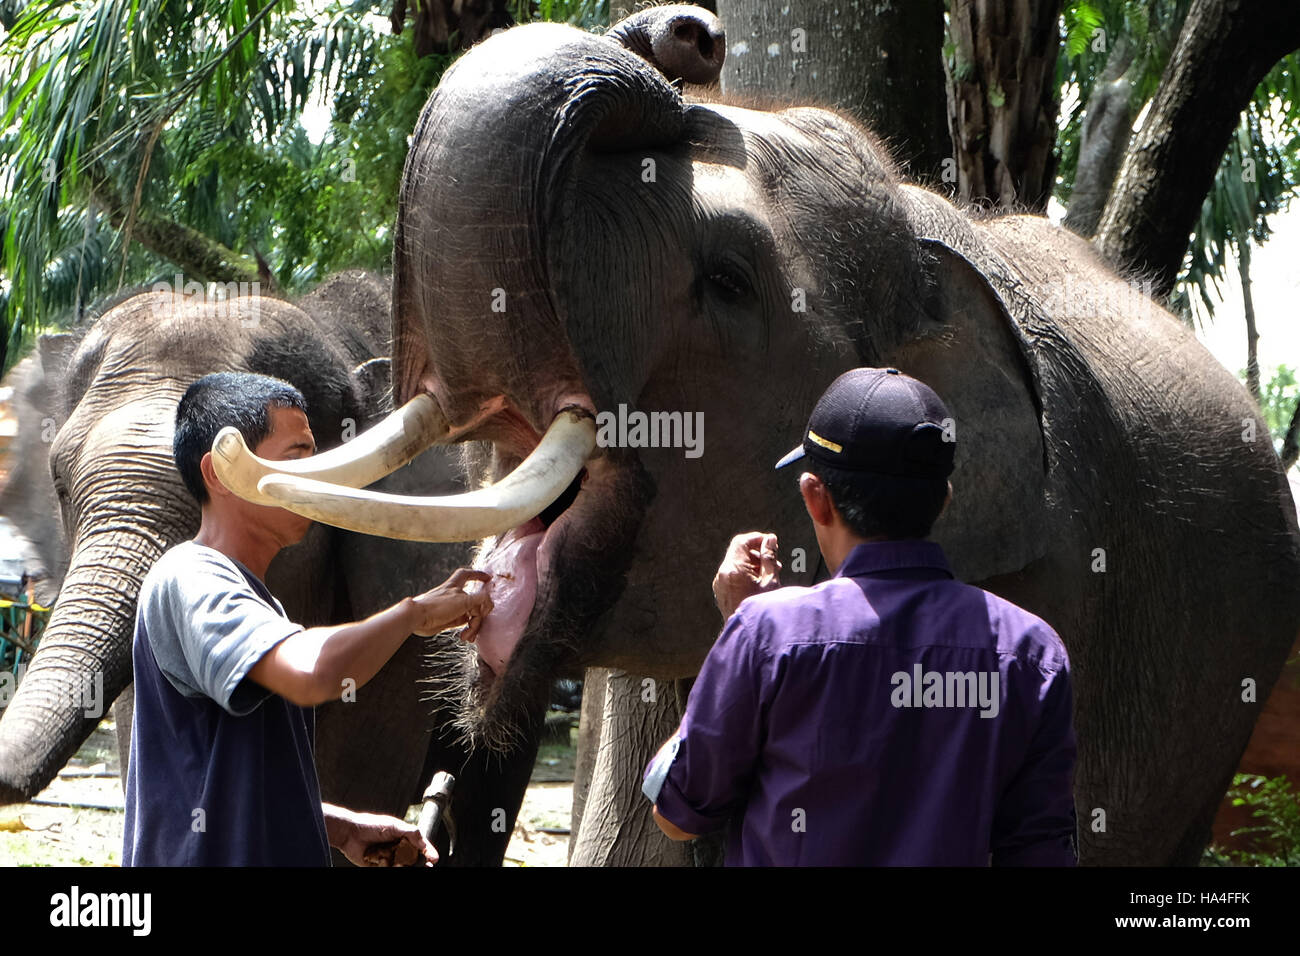 Novembre 27, 2016 - Pekanbaru, Riau, Indonesia - PEKANBARU, RIAU, INDONESIA Novembre 27, 2016: questo elefante chiamato Budi dal Centro Addestramento Elefanti nel Minas, Riau, Indonesia. Centro Addestramento Elefanti è di proteggere il habitat minacciati da elefanti di Sumatra. Elefante di Sumatra (Elephas maximus Sumatrensis) comprende attualmente in via di estinzione nell'elenco pubblicato da World Conservation Society. Questo è stato causato dal disboscamento illegale, il ritiro e la frammentazione degli habitat e l omicidio del conflitto e la caccia di frodo per prendere l'avorio. (Credito Immagine: © Dedy Sutisna via ZUMA filo) Foto Stock